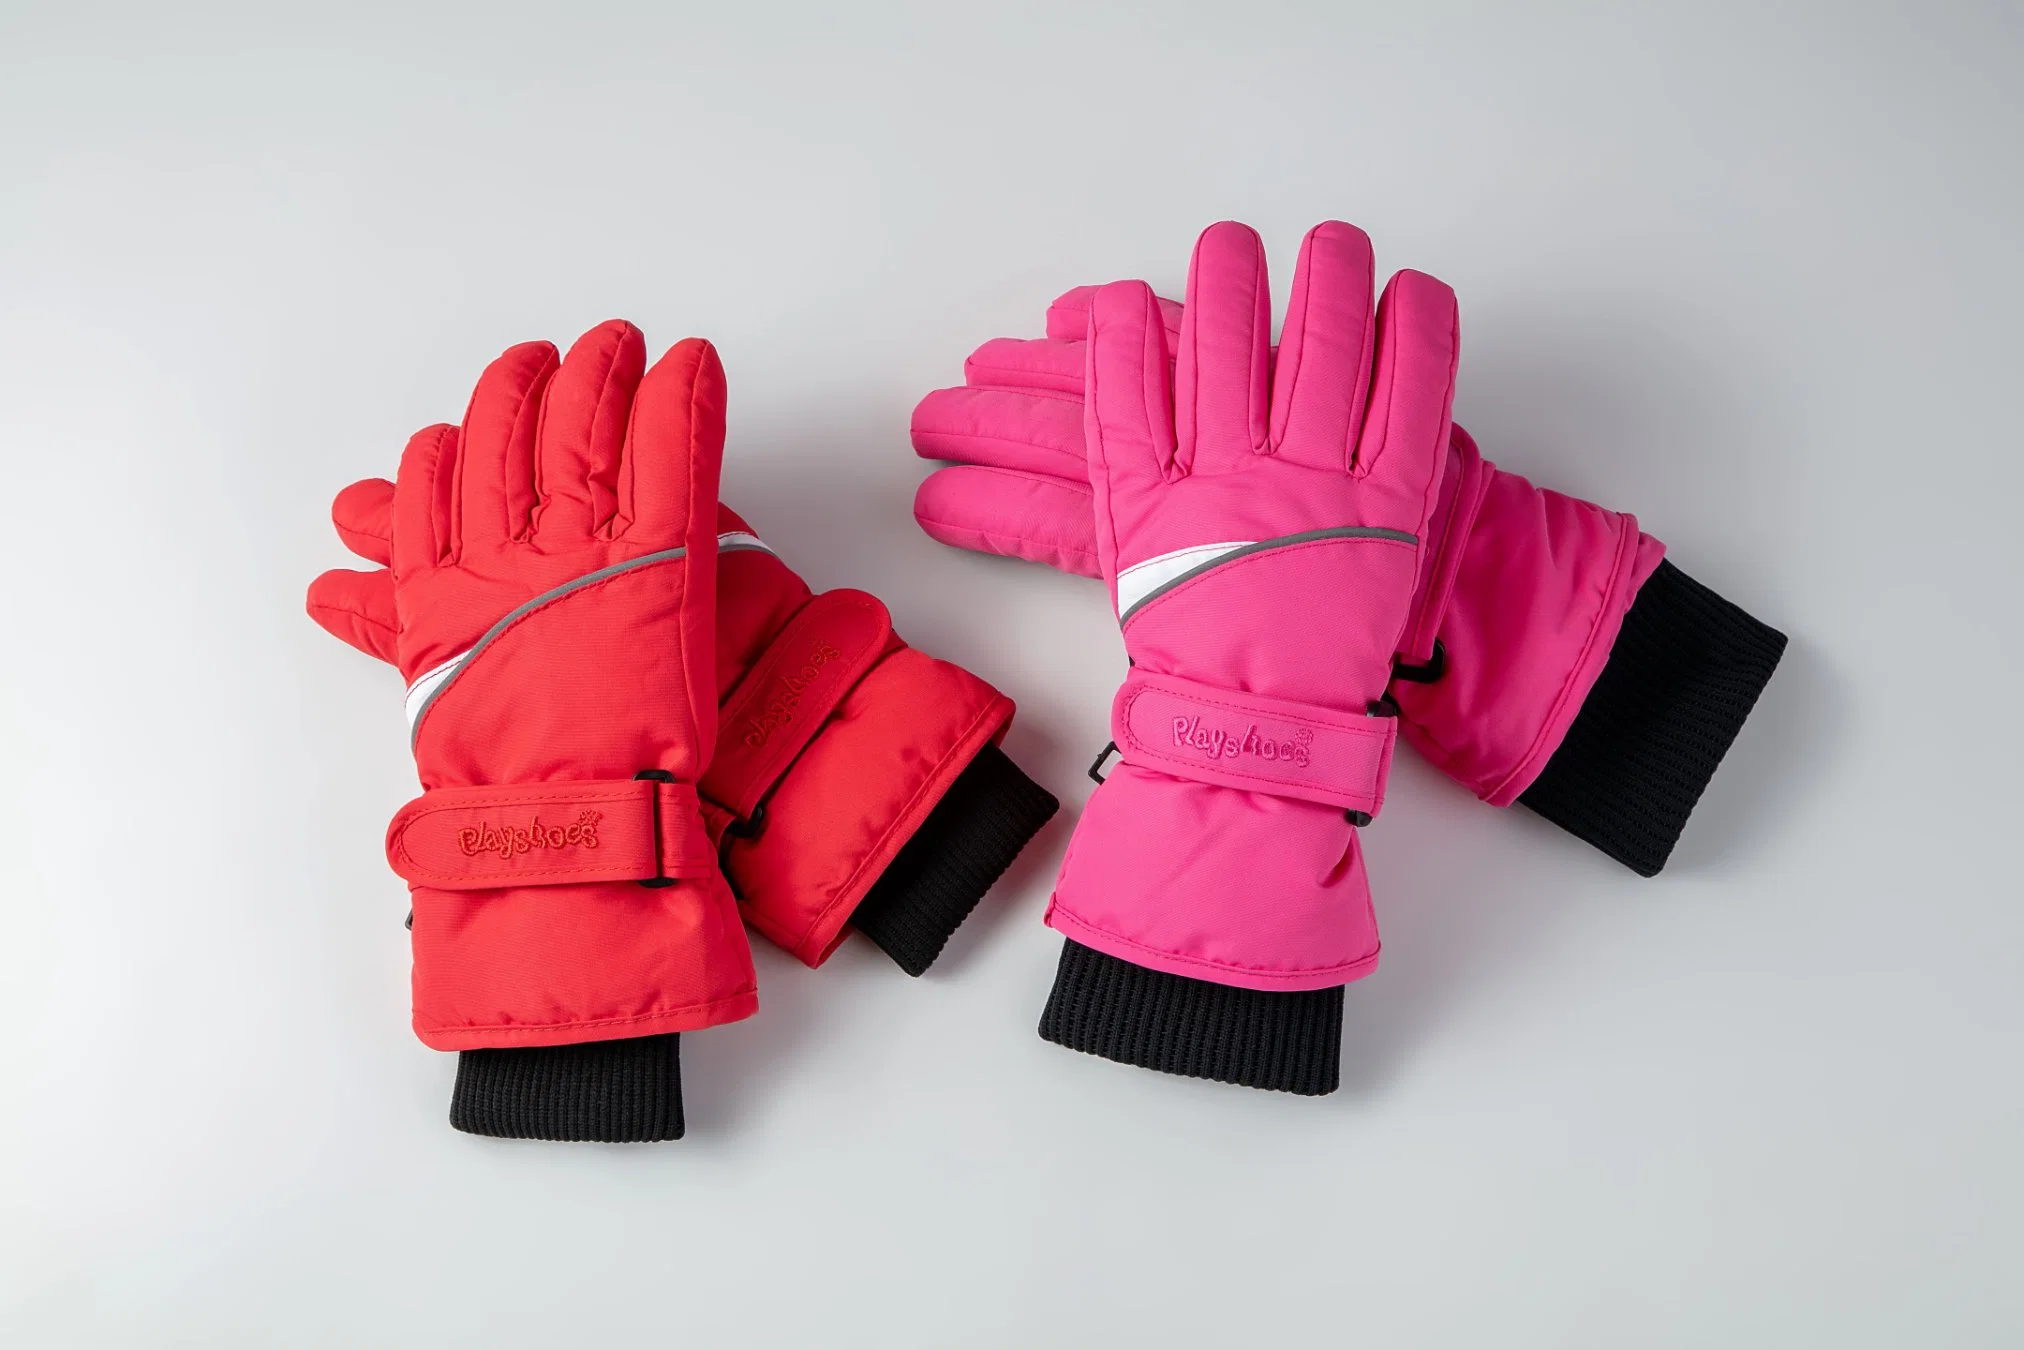 Kids Ski Glove/Kids' Five Finger Glove/ Children Ski Glove/Children Winter Glove/Detox Glove/Okotex Glove/Mitten Ski Glove/ Winter Glove